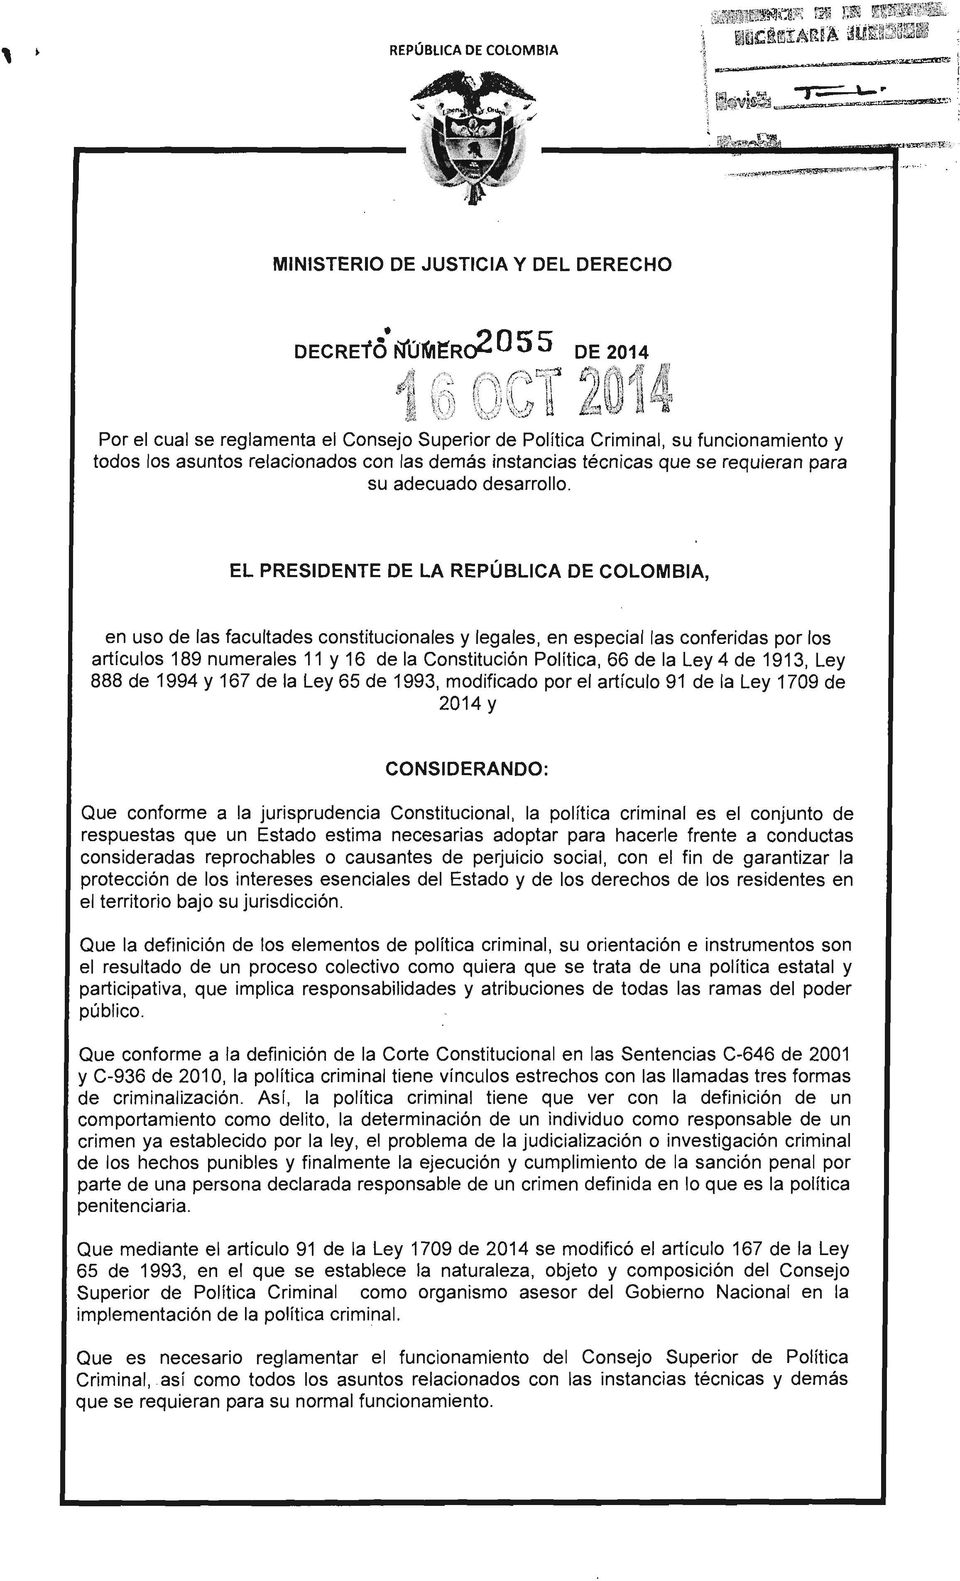 EL PRESIDENTE DE LA REPÚBLICA DE COLOMBIA, en uso de las facultades constitucionales y legales, en especial las conferidas por los artículos 189 numerales 11 y 16 de la Constitución Política, 66 de